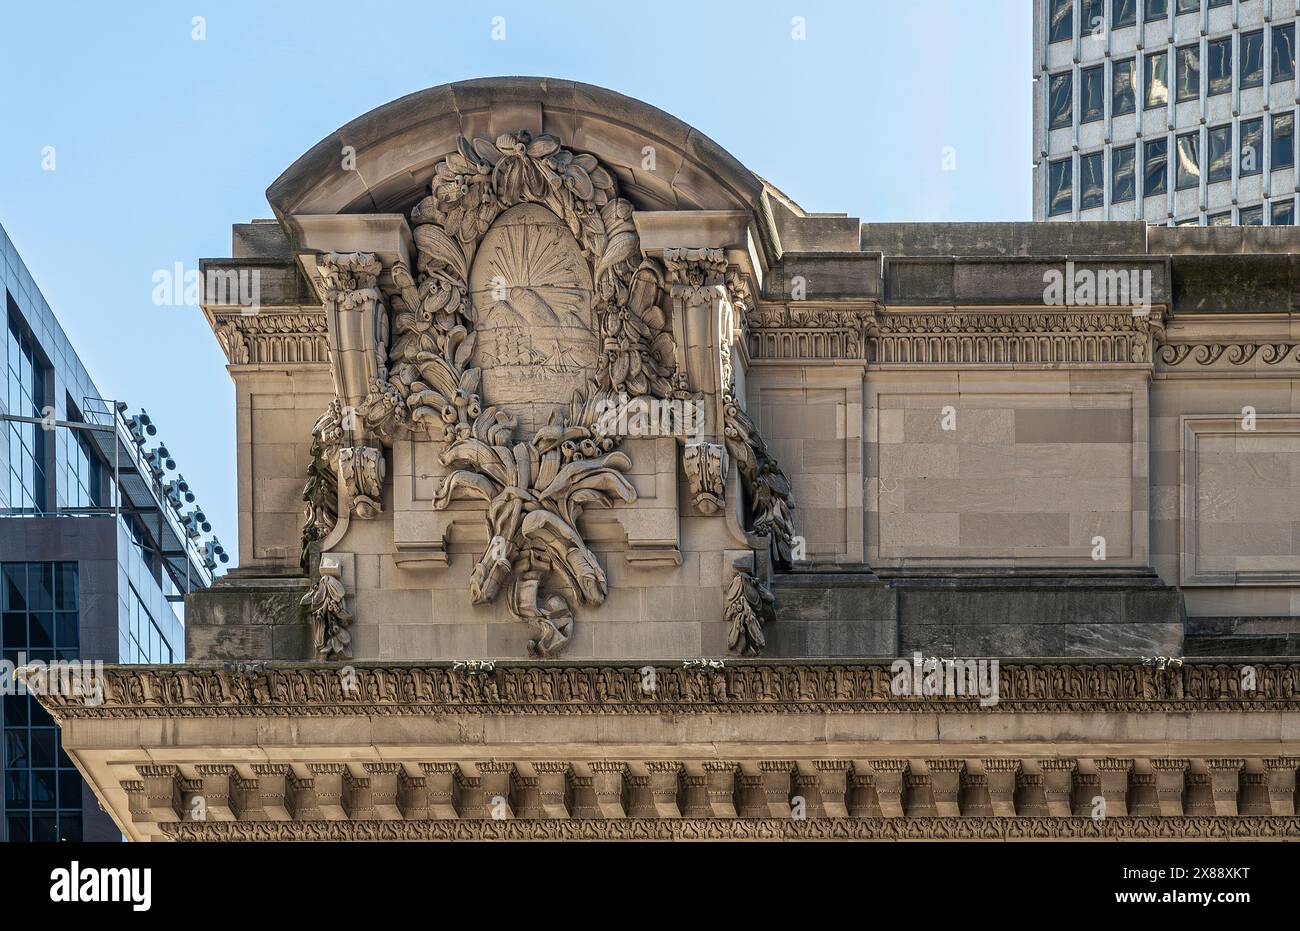 New York, NY, USA - 2 agosto 2023: Grand Central Terminal angolo Vanderbilt Ave e East 42nd Street. Scultura d'angolo sulla sommità del tetto. Foto Stock